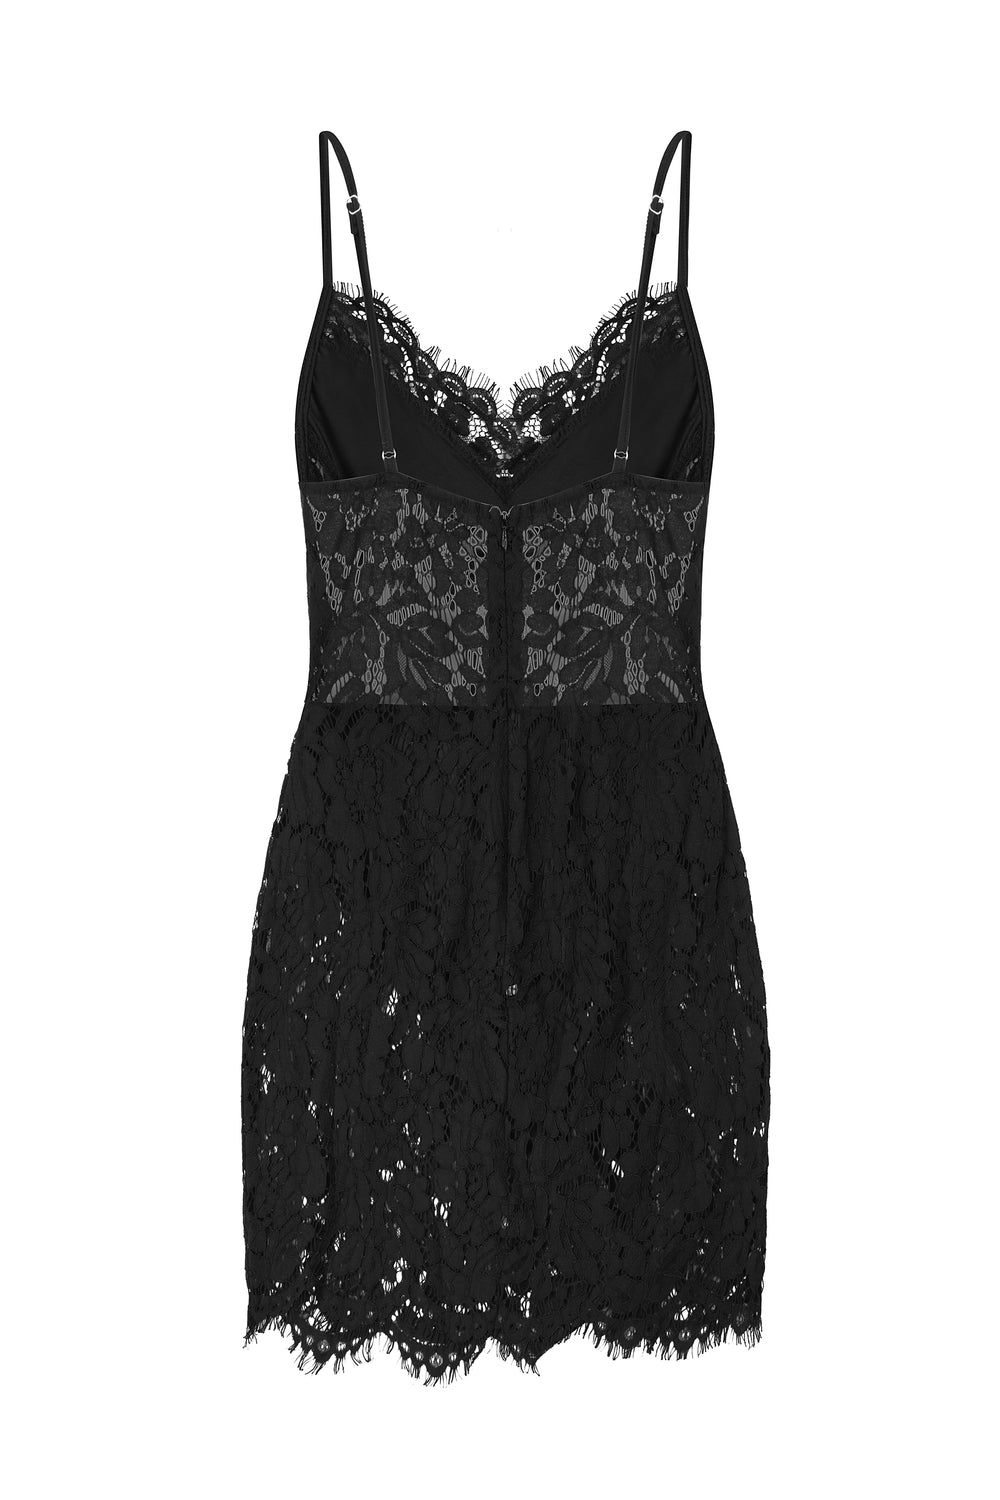 Sheer Me Up Lace Black Bodycon Mini Slit Dress